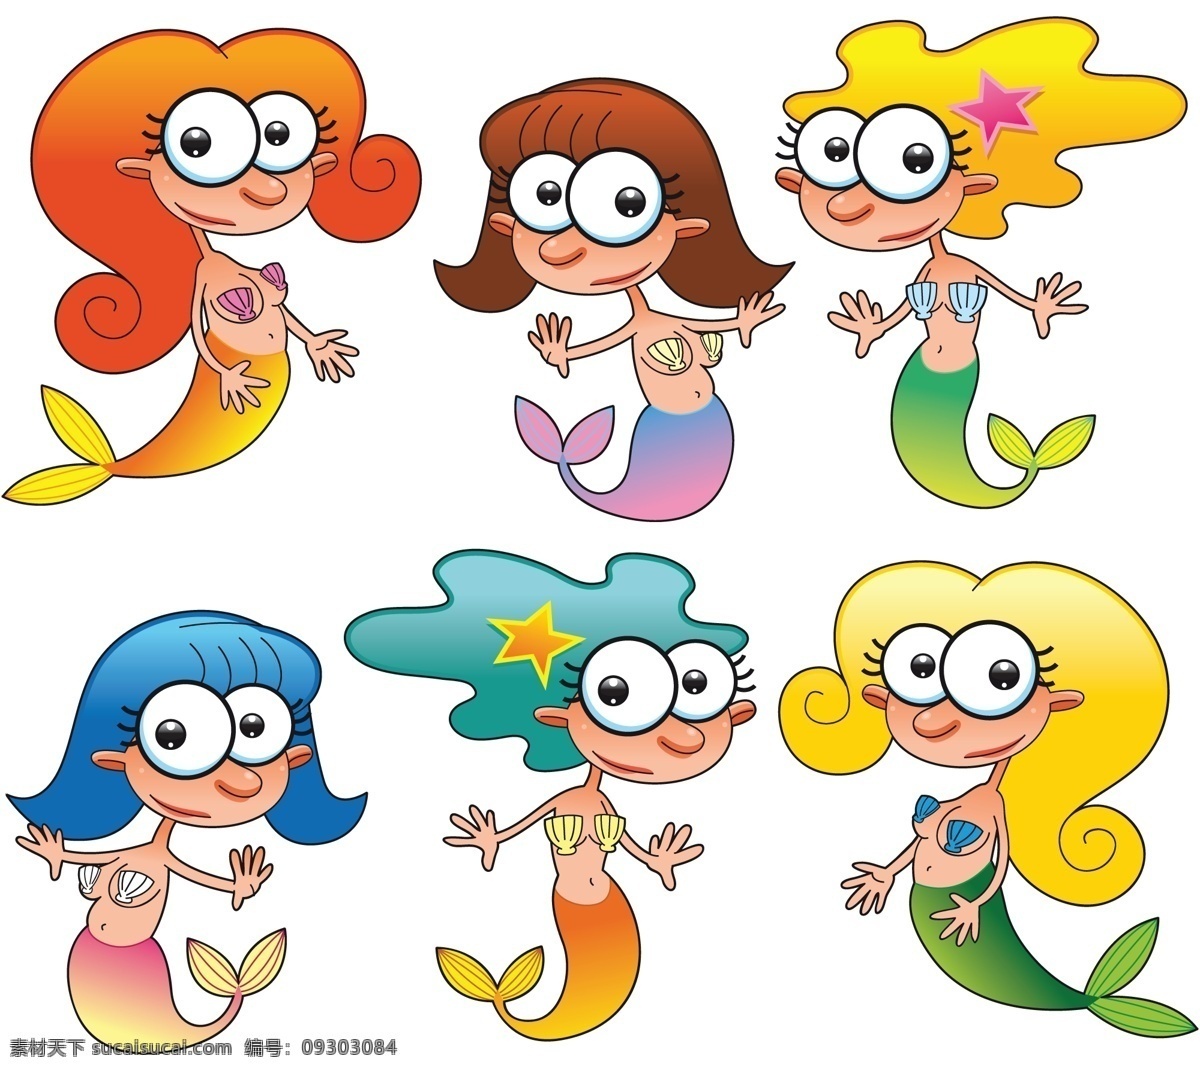 卡通 美人鱼 形象 矢量图 卡通形象 可爱美人鱼 美人鱼设计 卡通美人鱼 其他矢量图